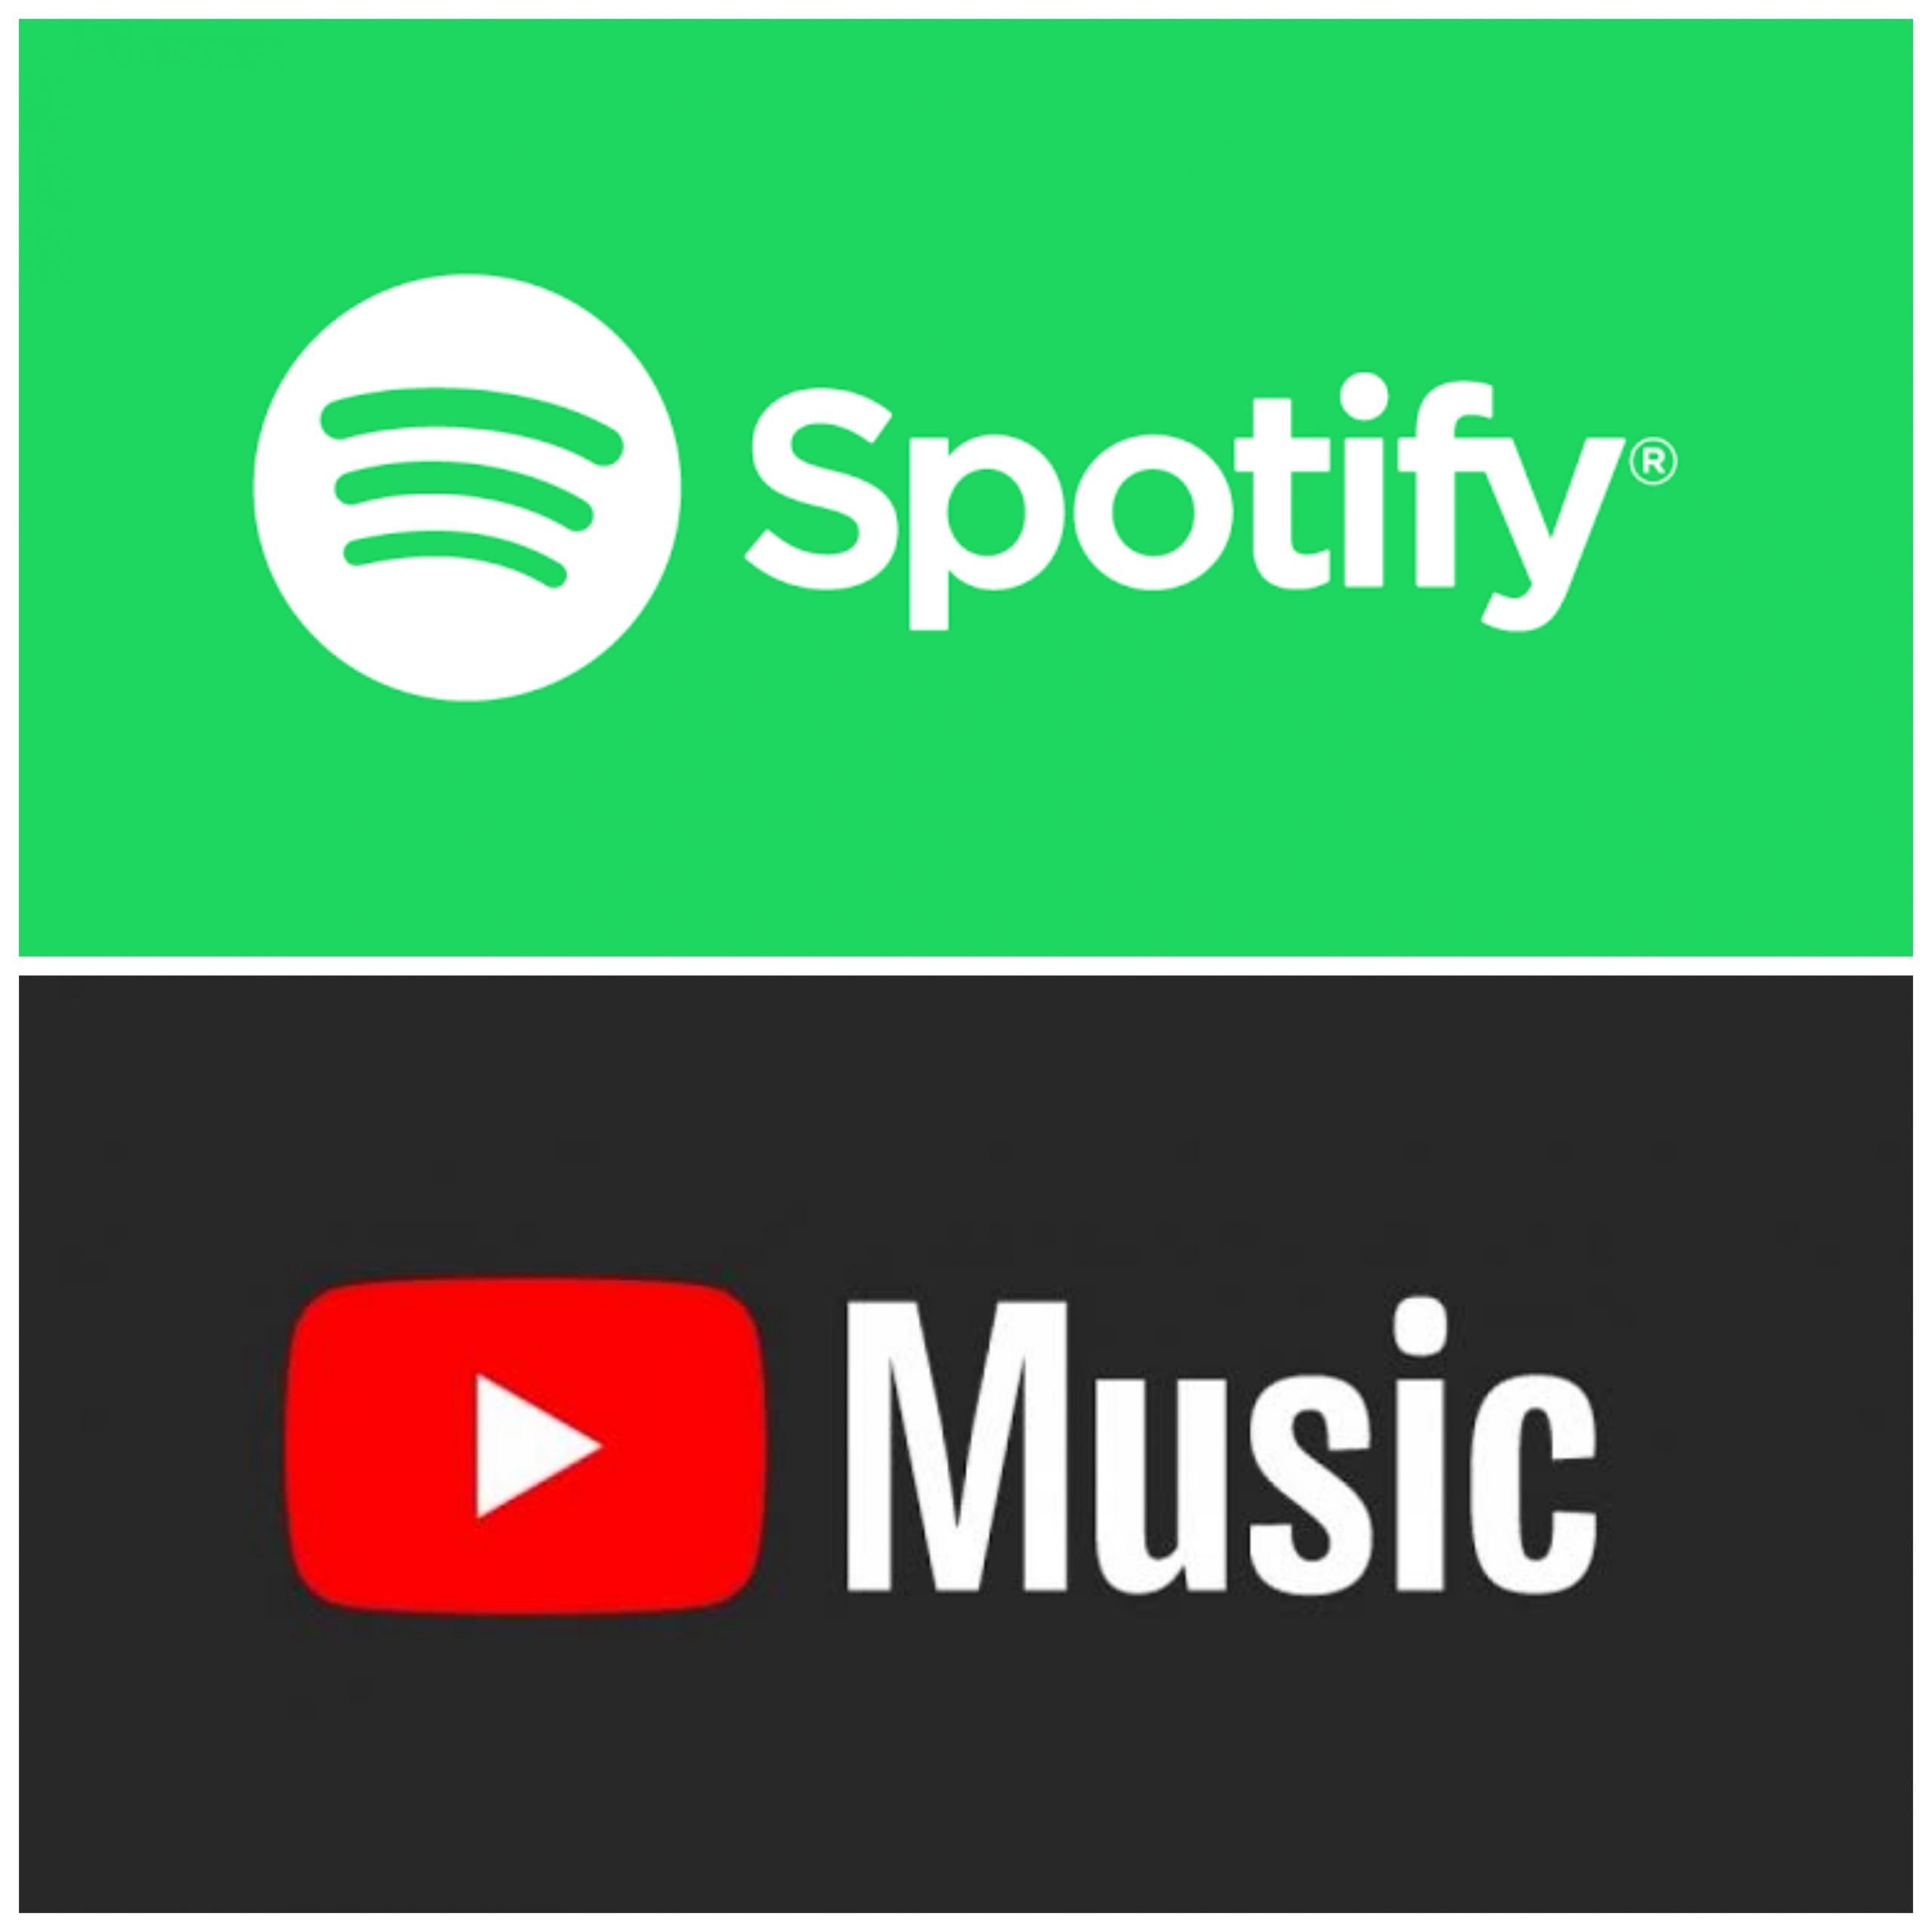 YouTube Music Vs Spotify Ug Tech Mag